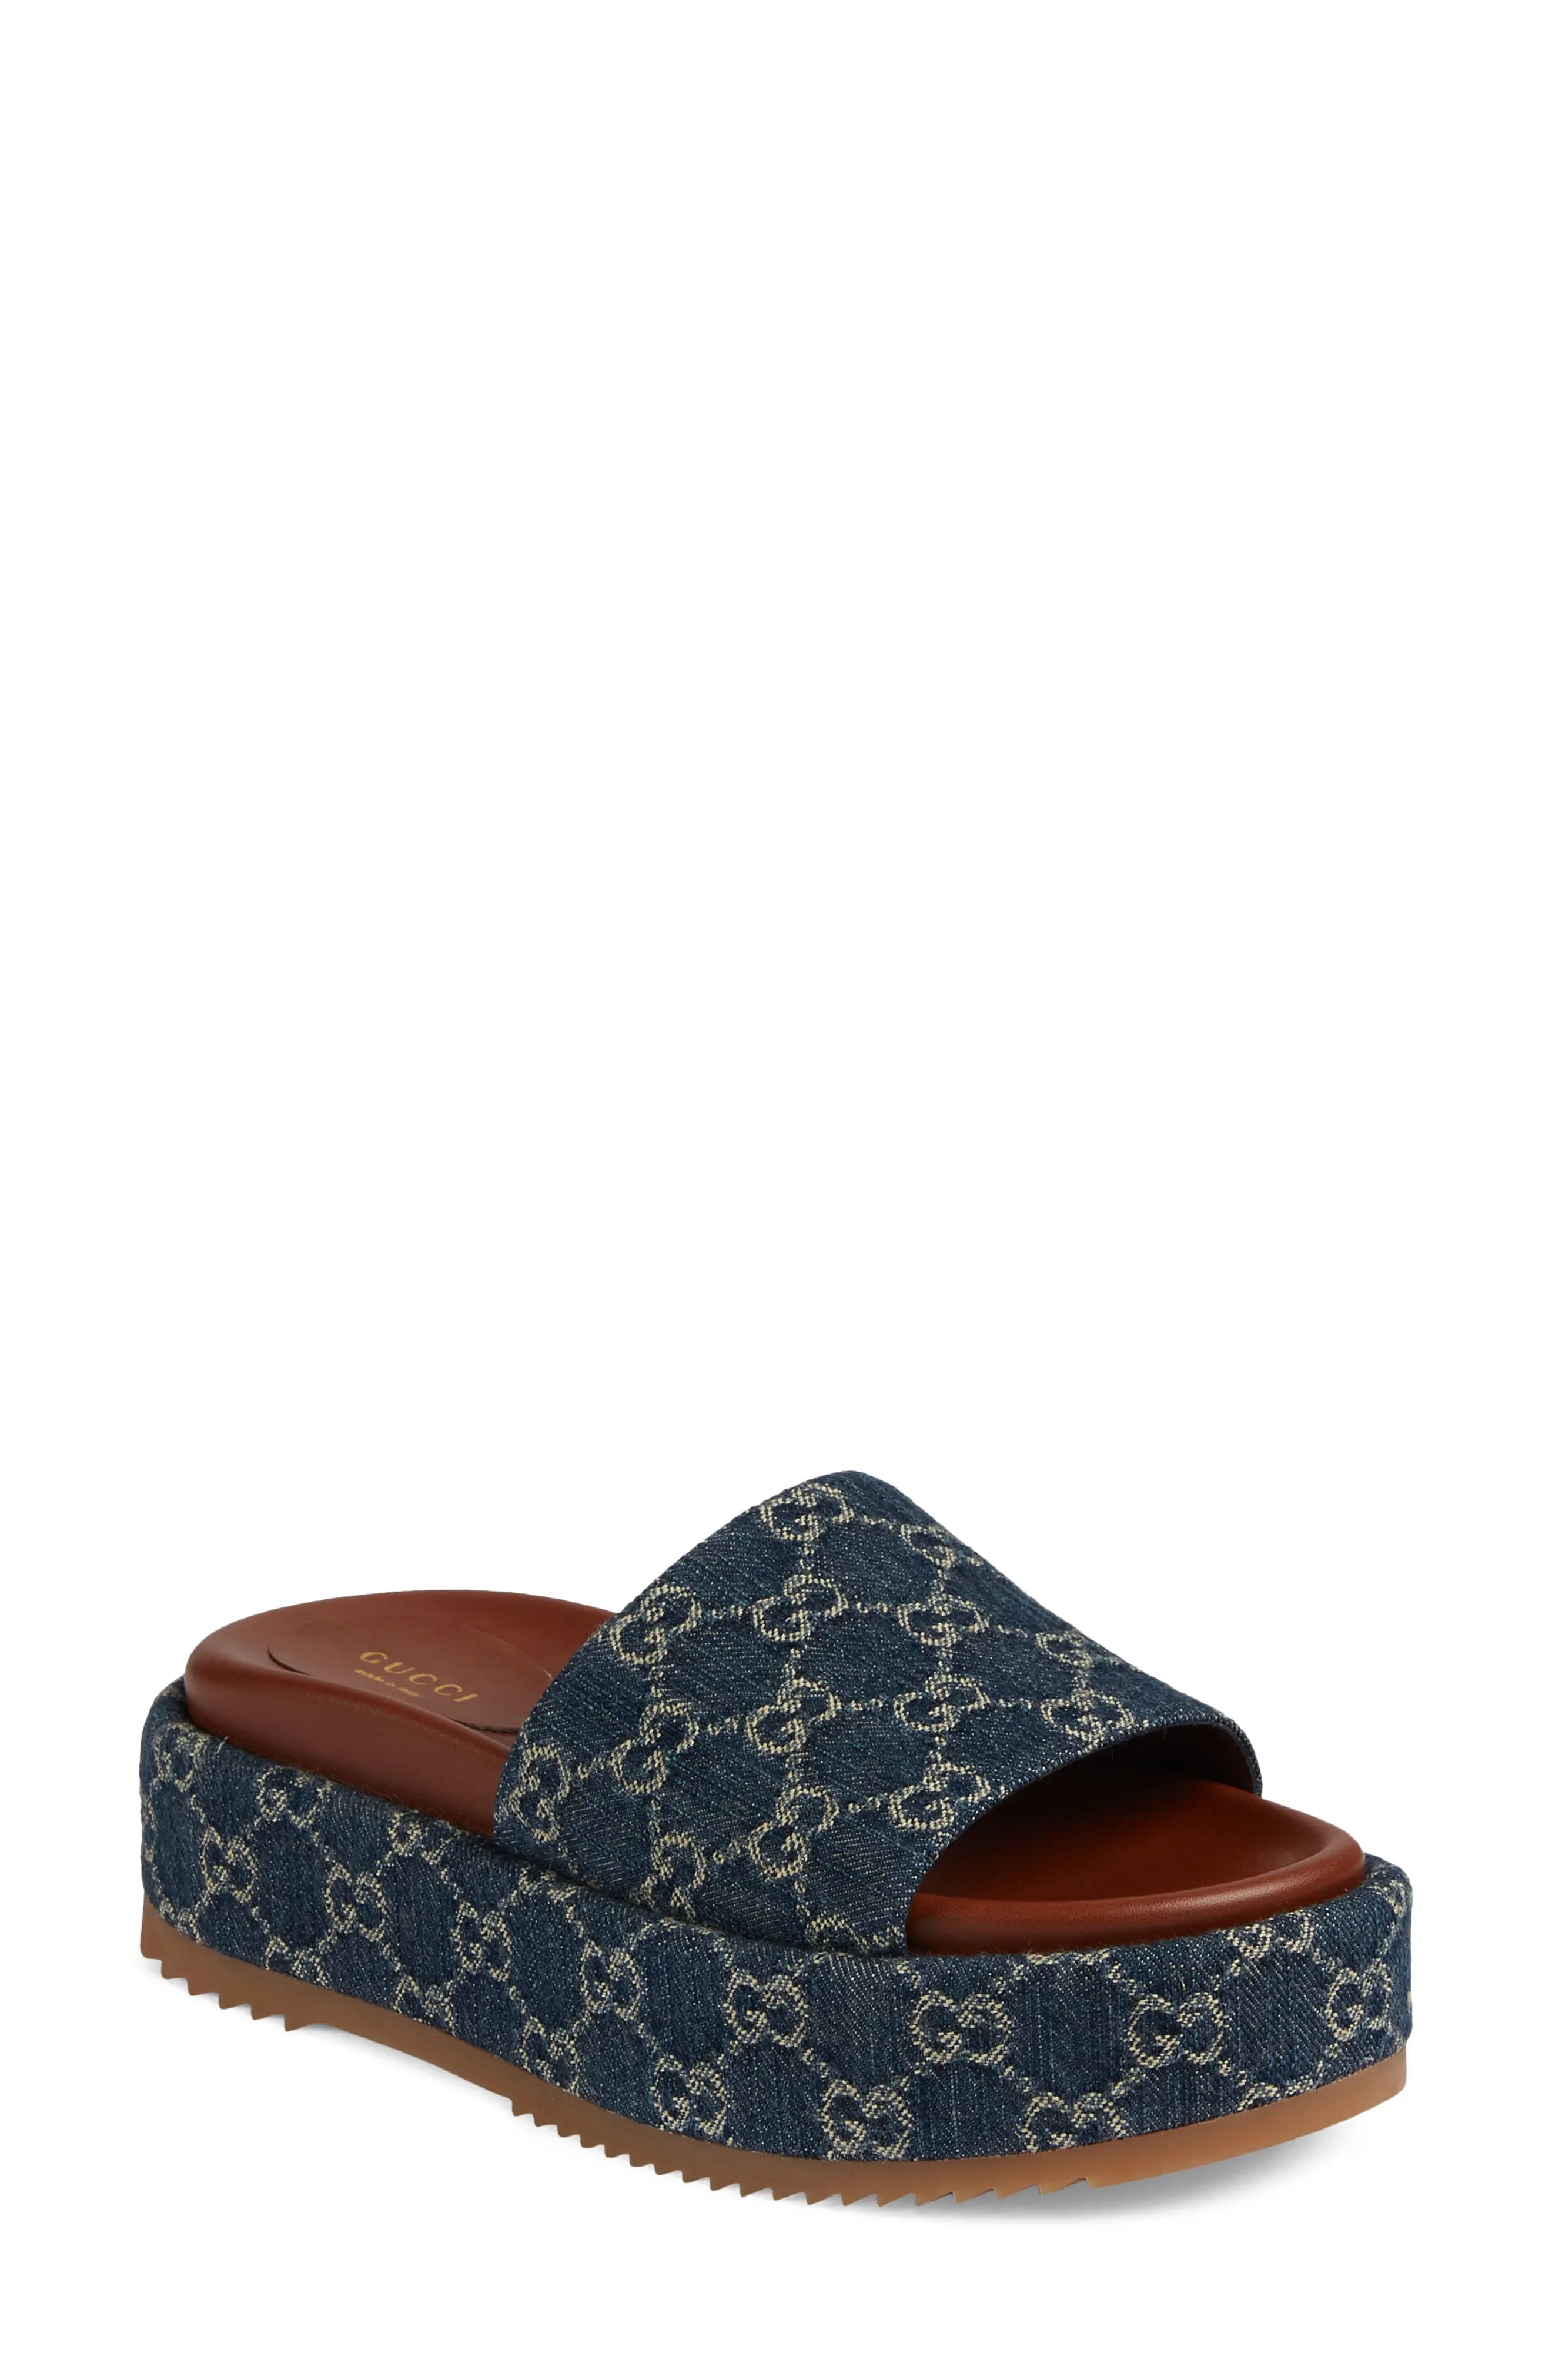 Gucci Angelina GG Logo Platform Slide Sandal in Blue Tea at Nordstrom, Size 5.5Us | Nordstrom